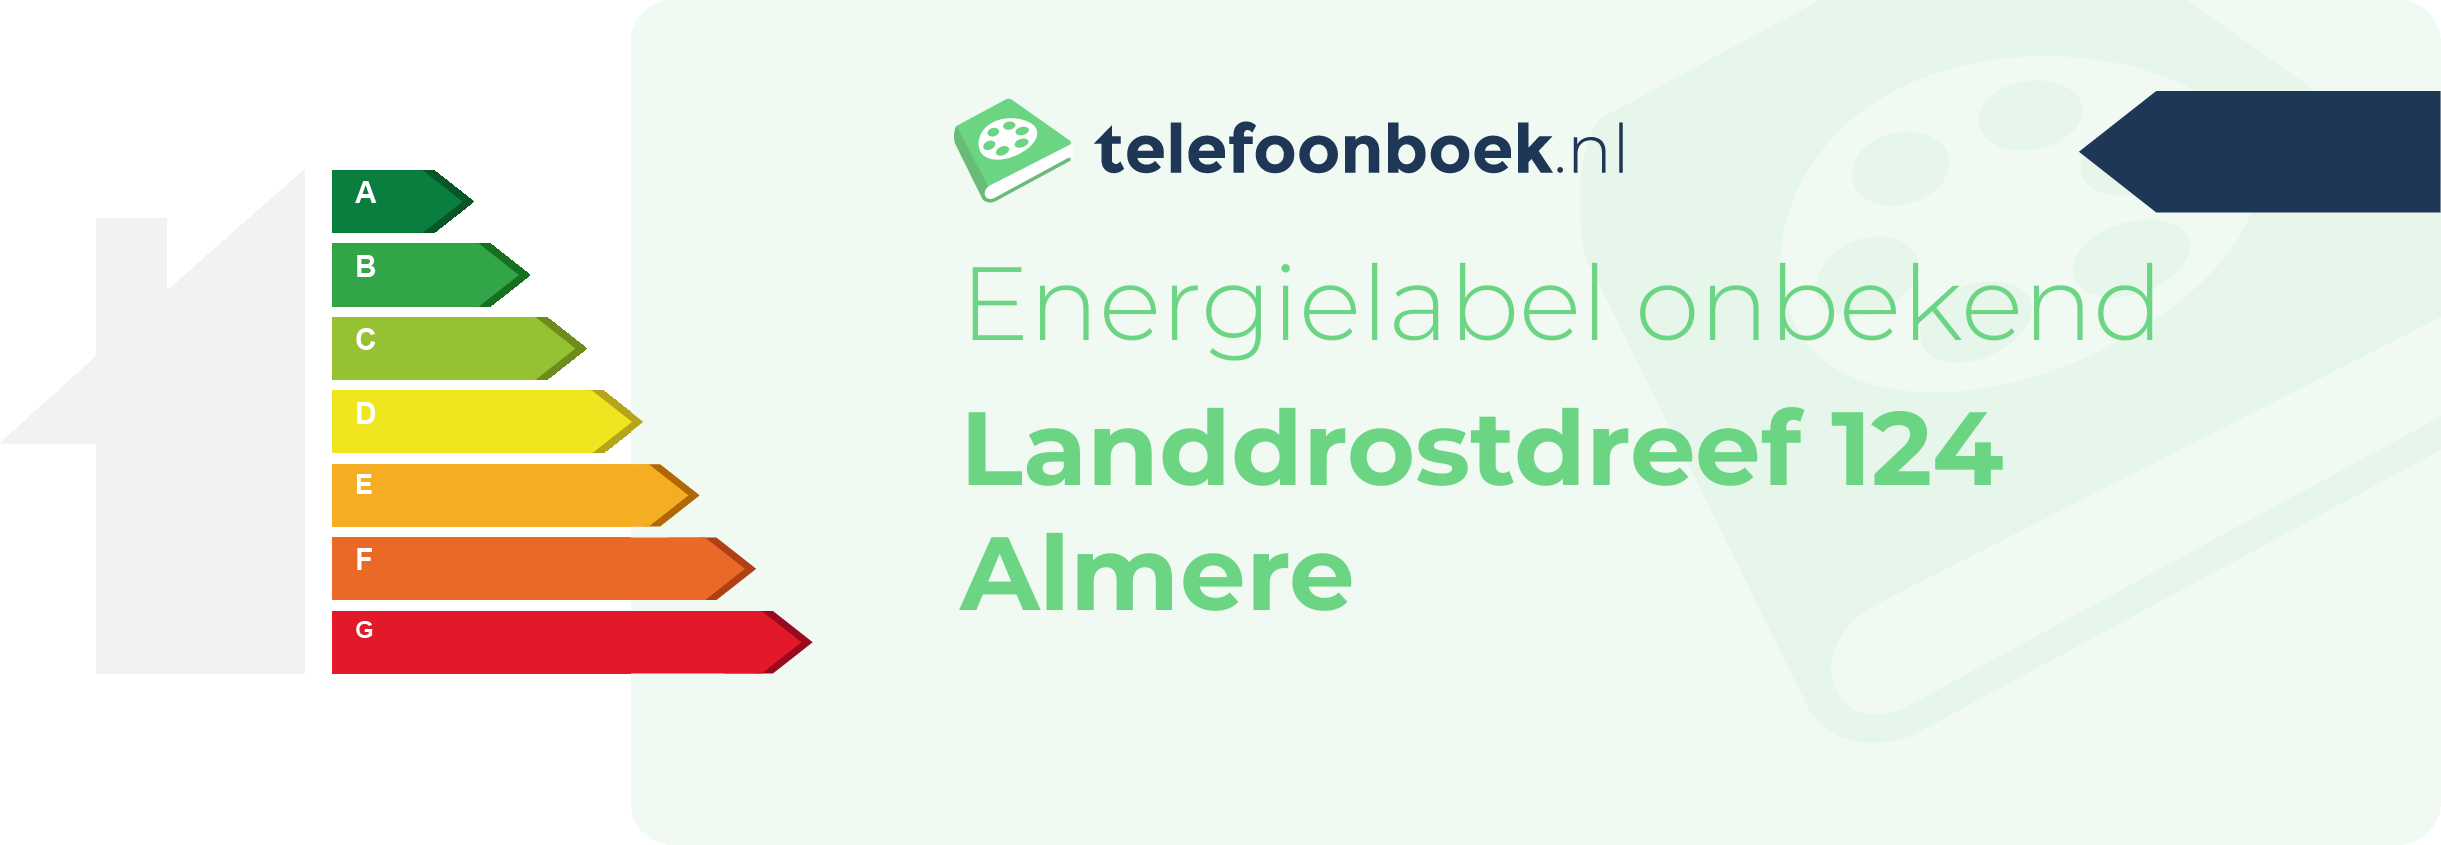 Energielabel Landdrostdreef 124 Almere